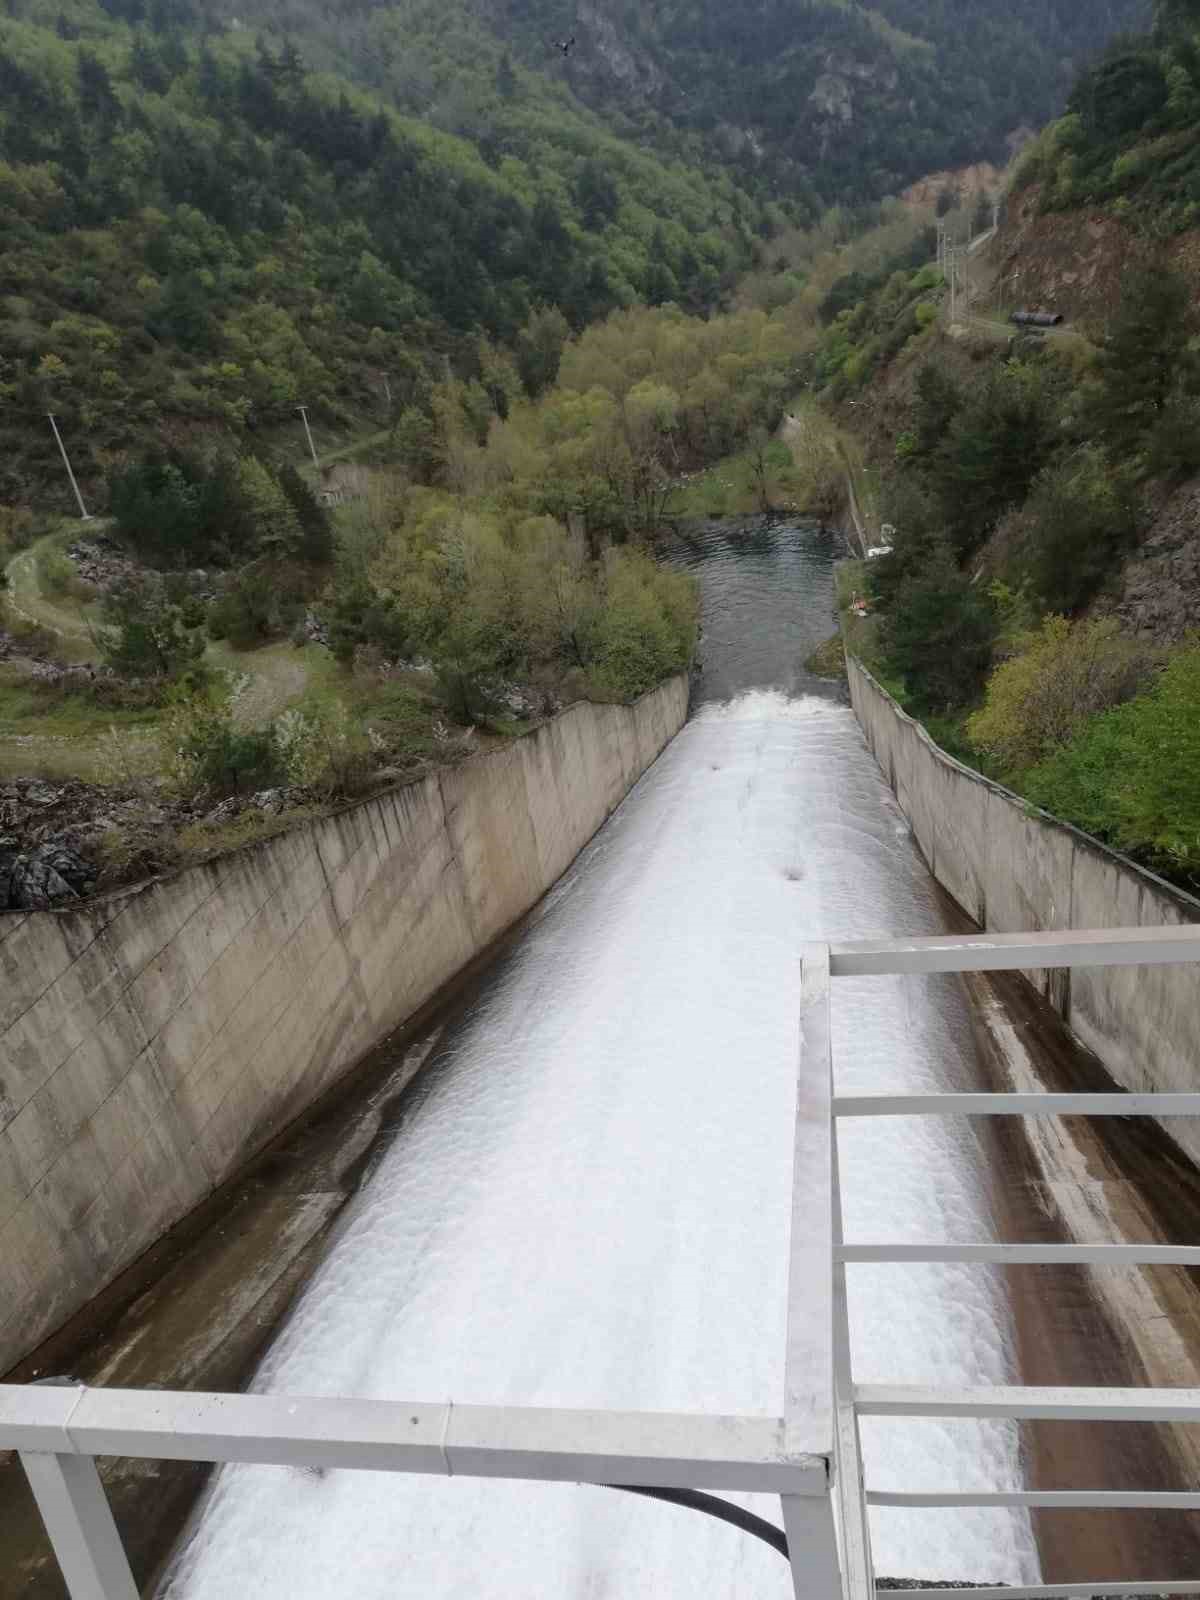 Doğancı yüzde 100’e ulaştı, barajın kapakları açıldı